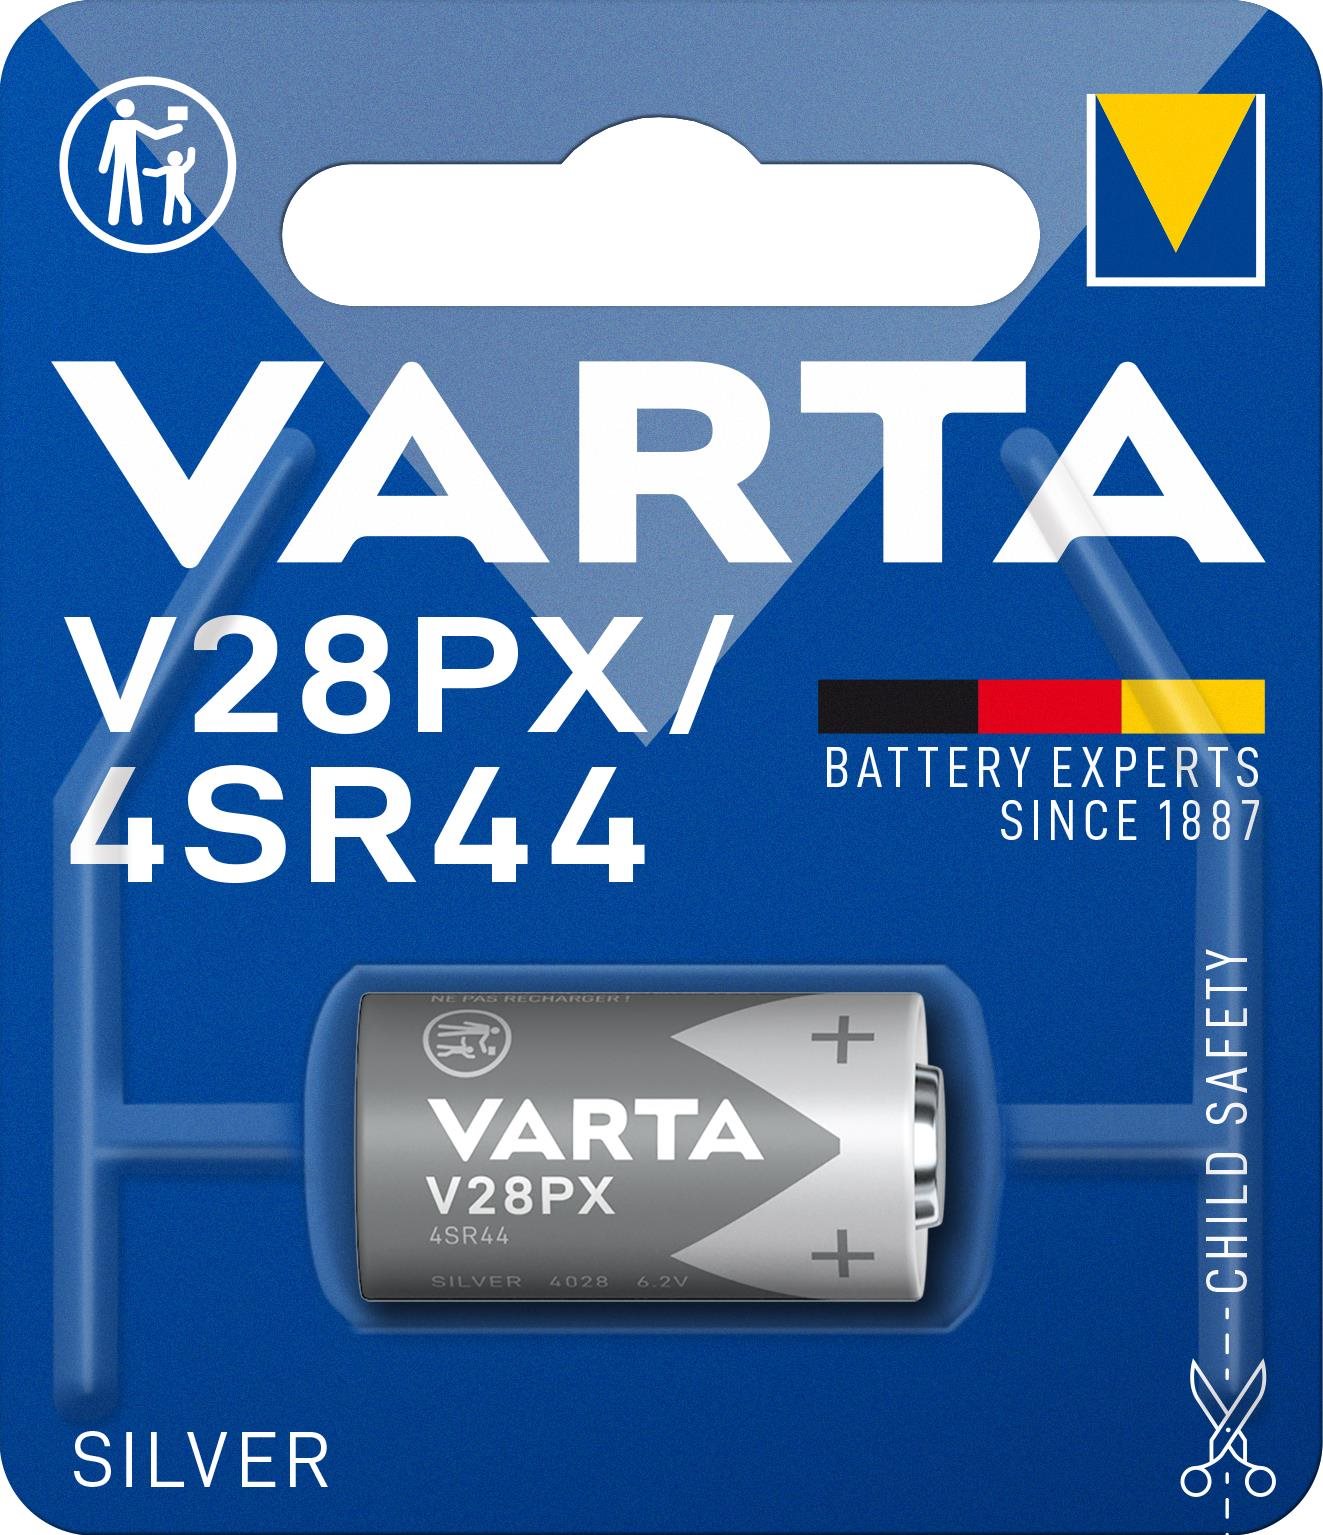 VARTA V28PX/4SR44 Speciális ezüst-oxid elem - 1 db